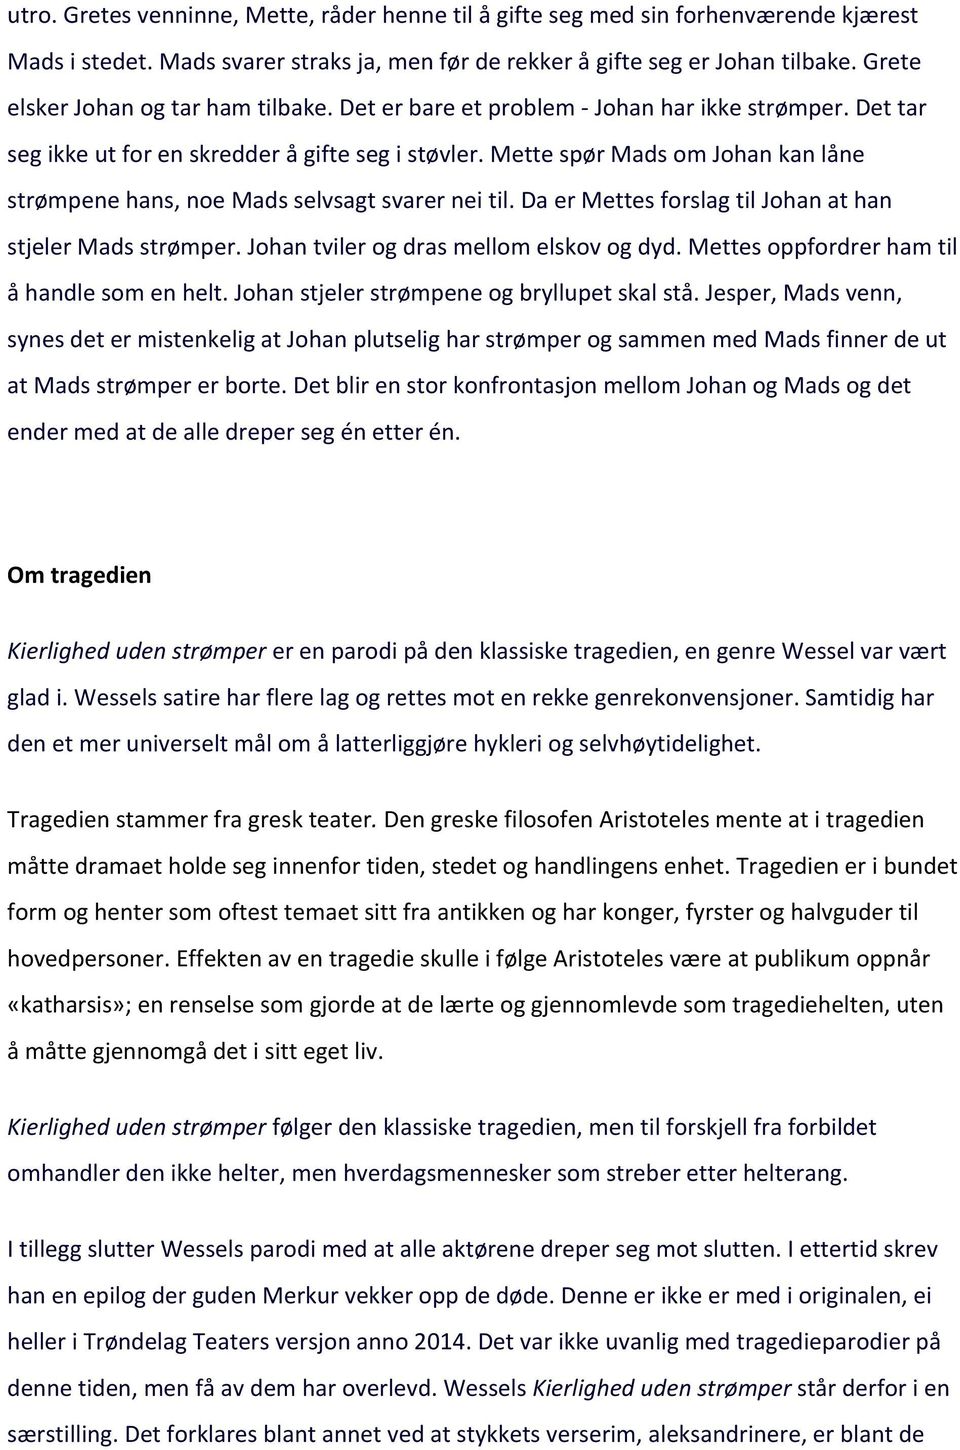 Bakgrunnsmateriale til Kierlighed uden strømper. Av Johan Herman Wessel.  Trøndelag Teater, Theatercaféen. Premiere 24. mars PDF Free Download